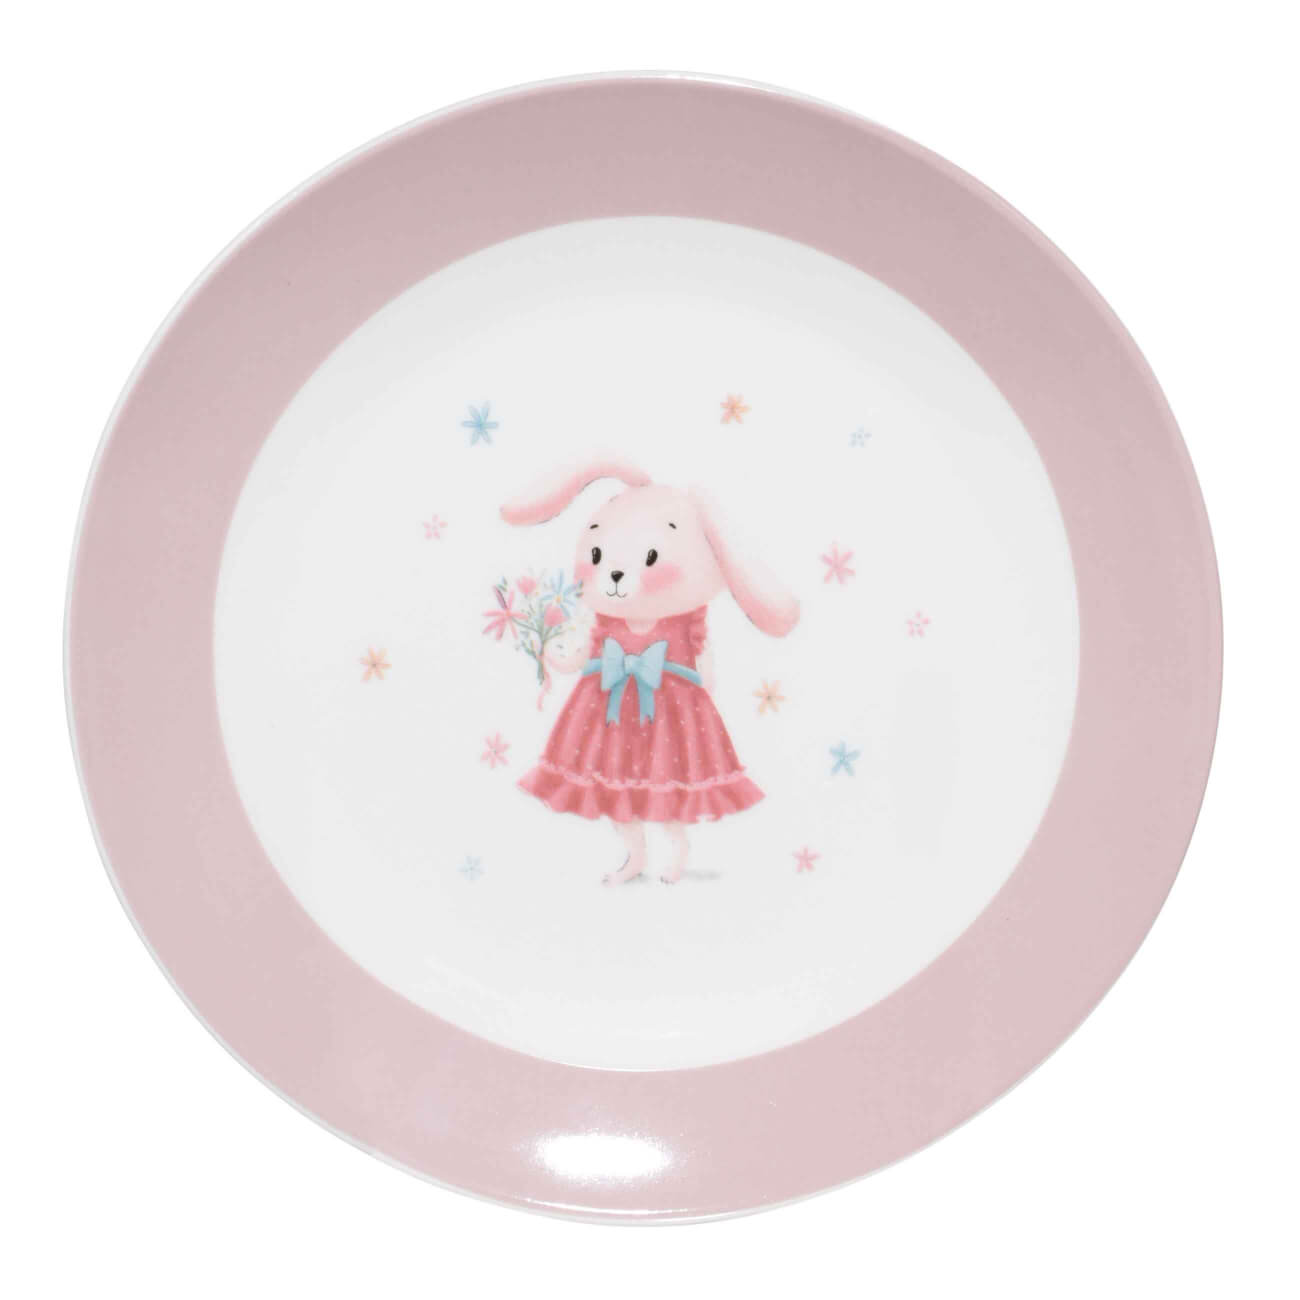 Тарелка закусочная, детская, 19 см, фарфор N, бело-розовая, Крольчиха с цветами, Ideas life тарелка для сортировки с пинцетом